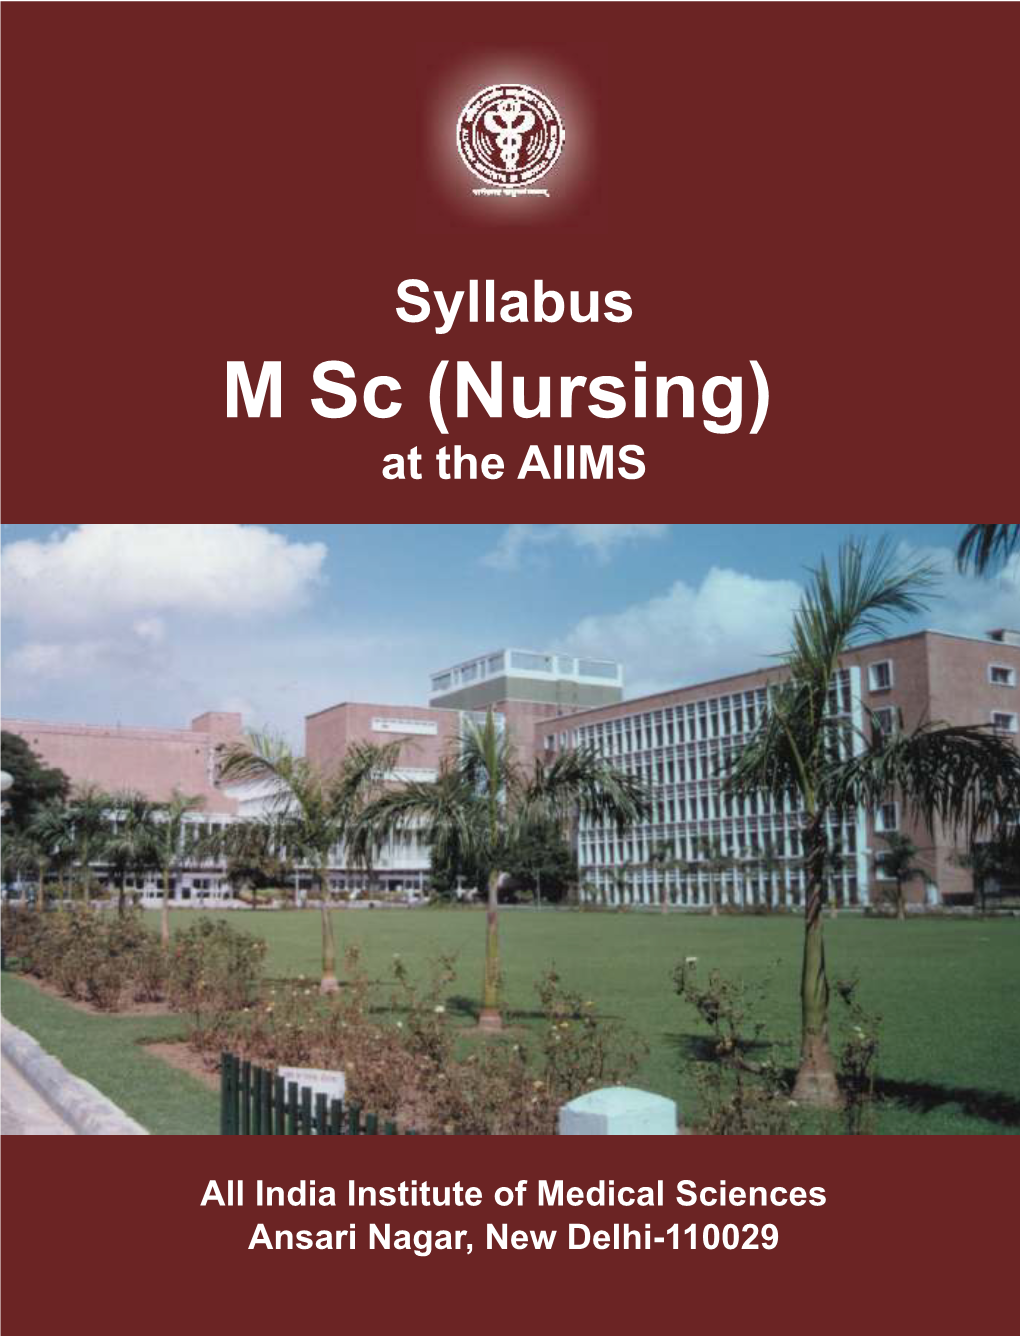 Syllabus for M.Sc (Nursing)